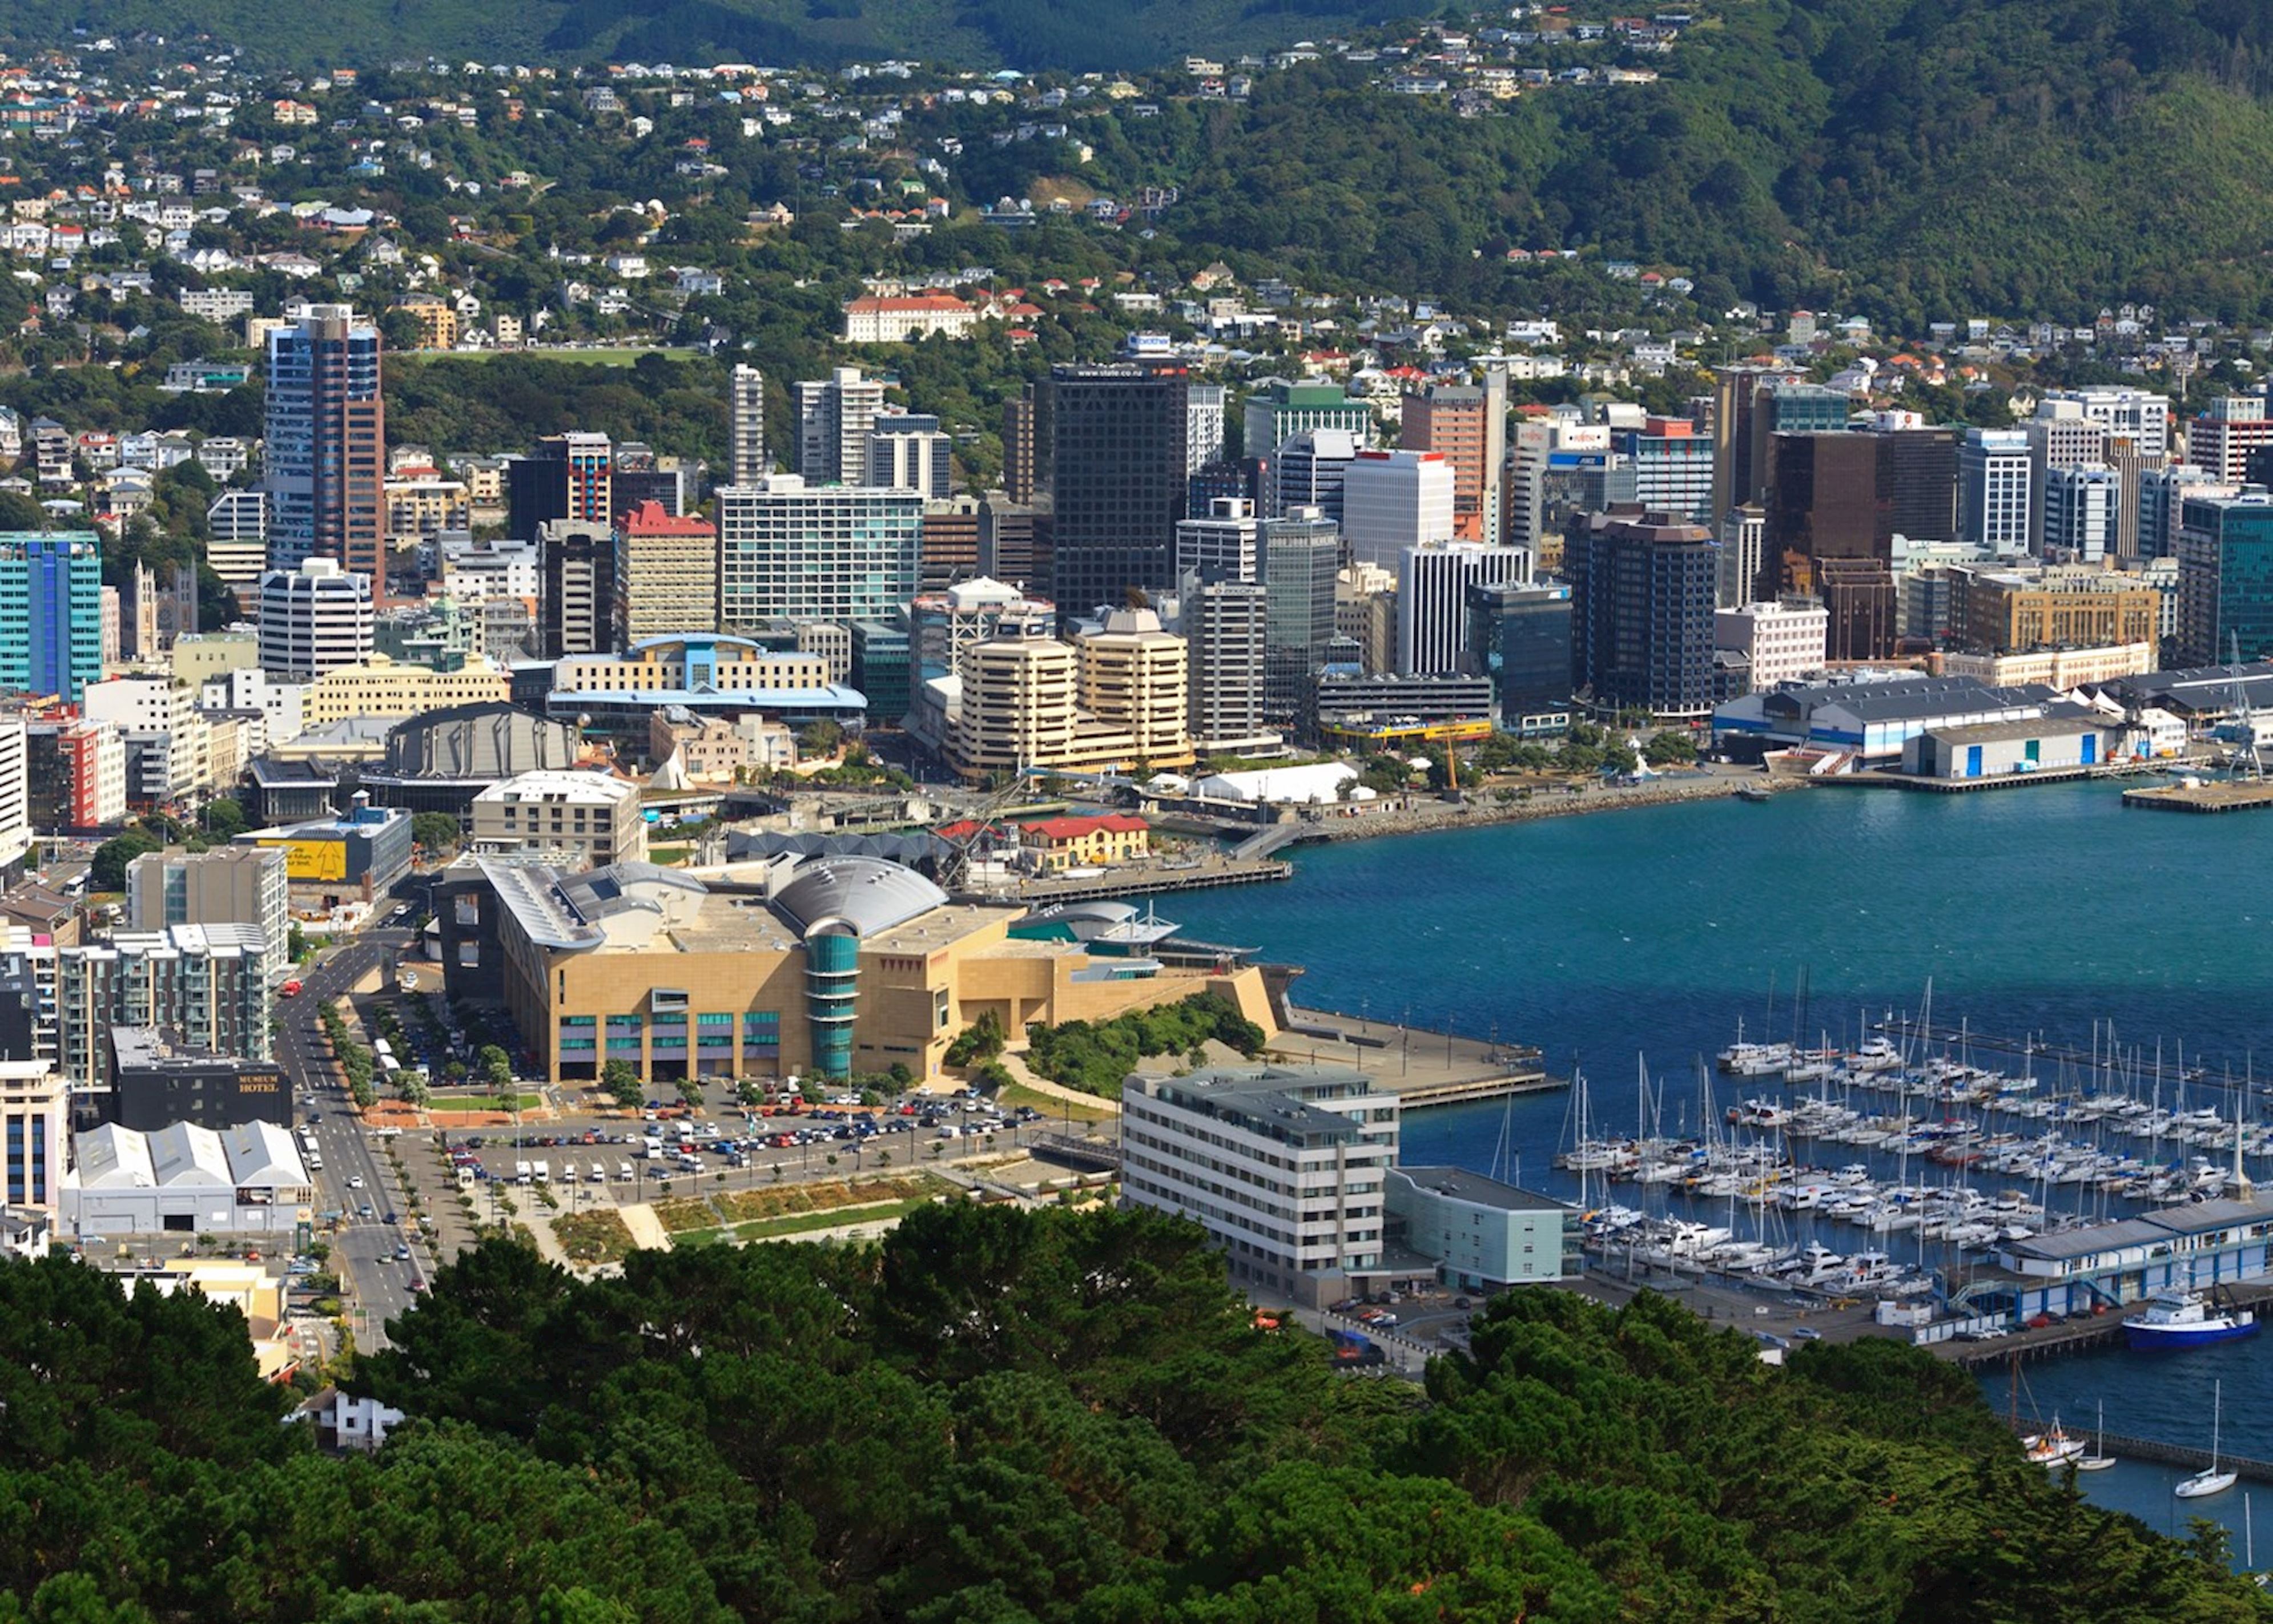 感受强劲有力的城市脉搏——新西兰首都惠灵顿 - 马蜂窝